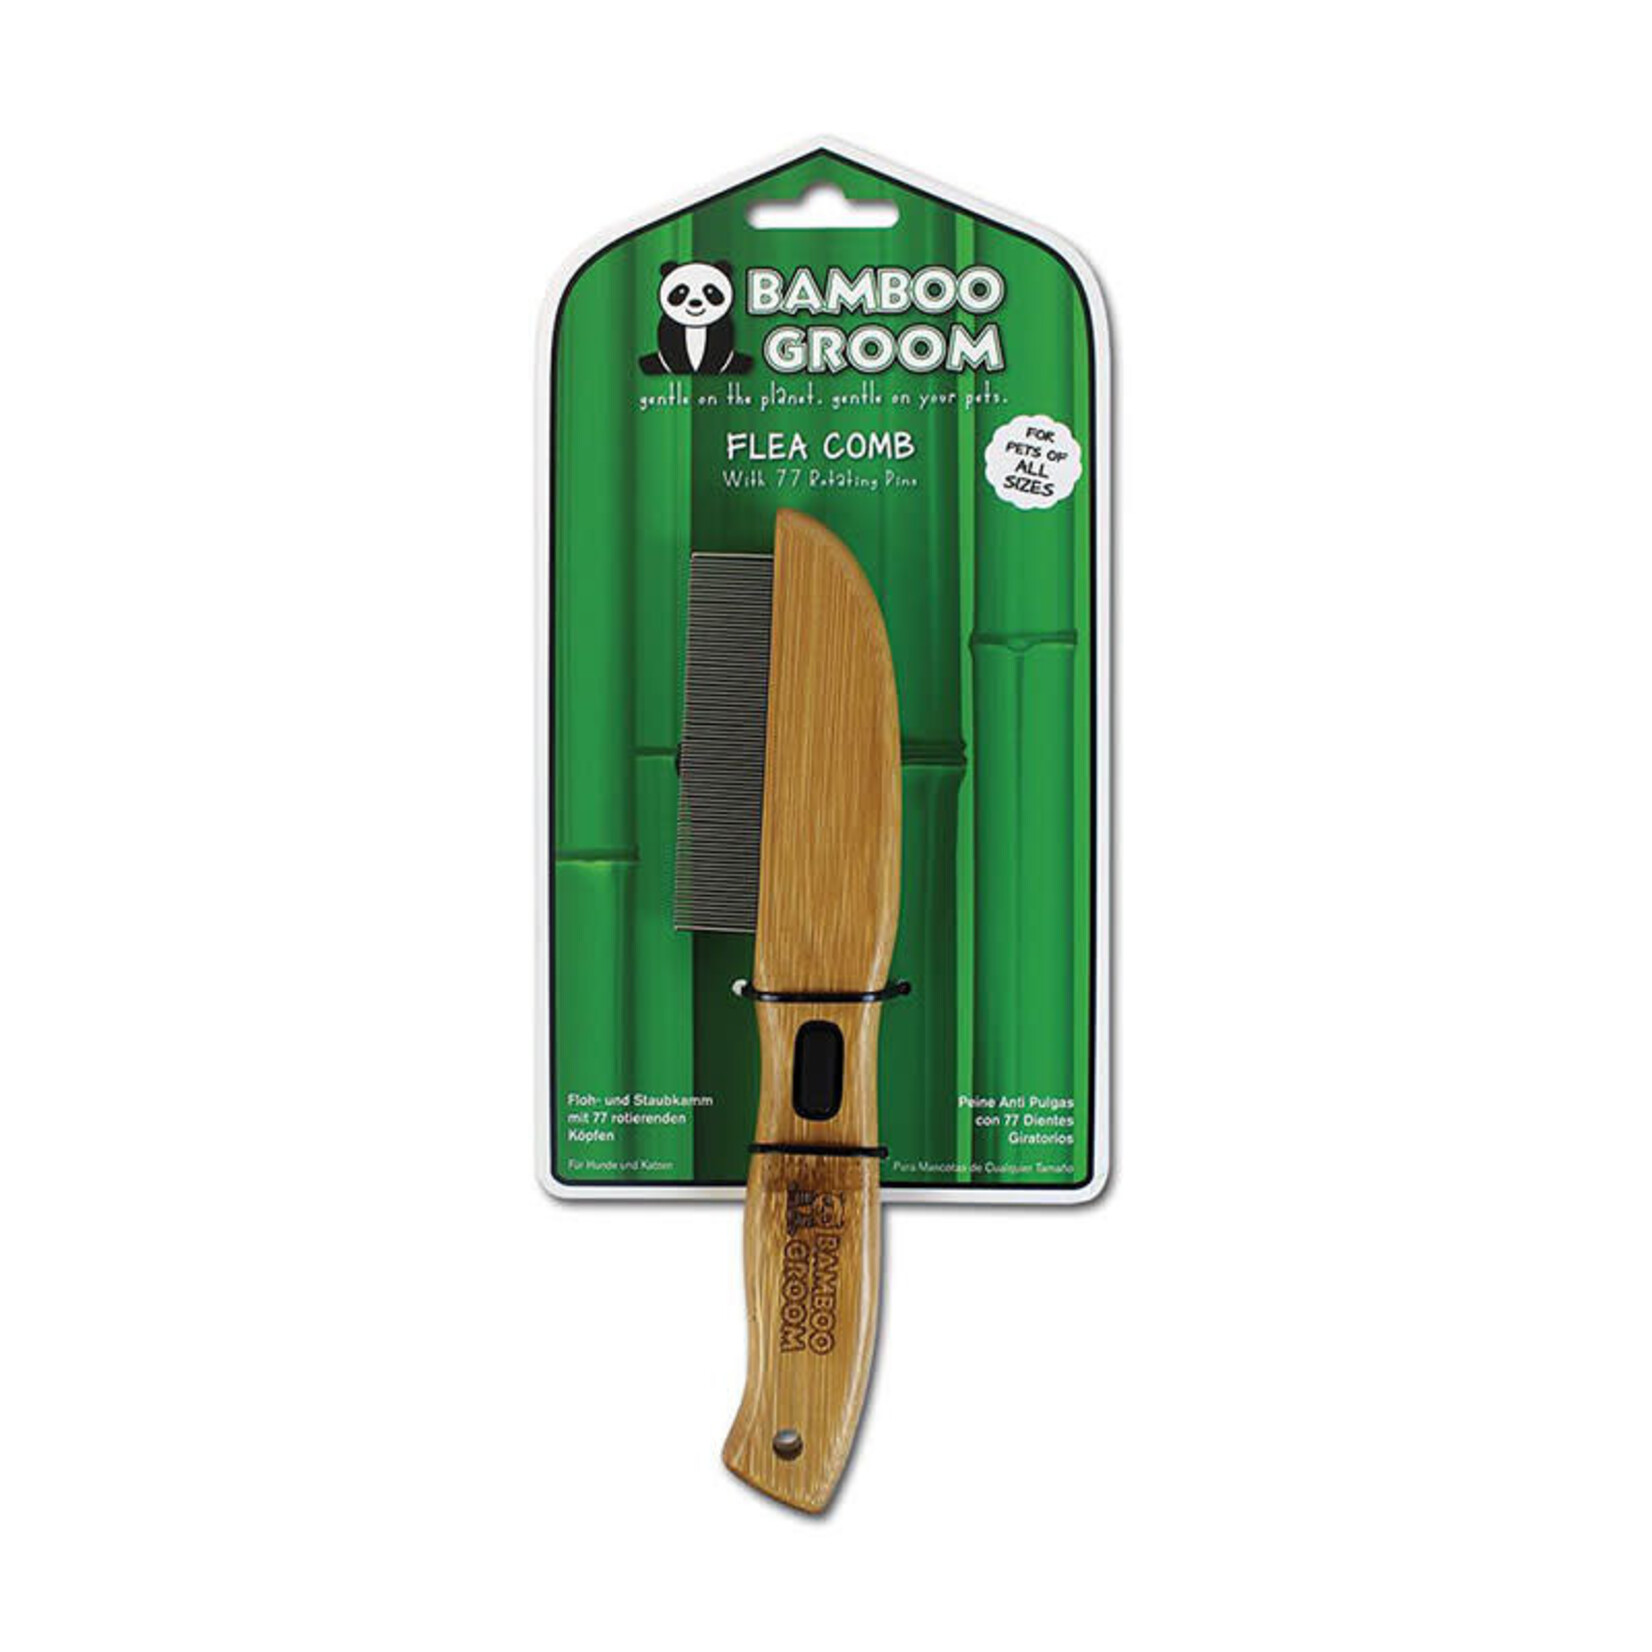 Bamboo Groom - Flea Comb